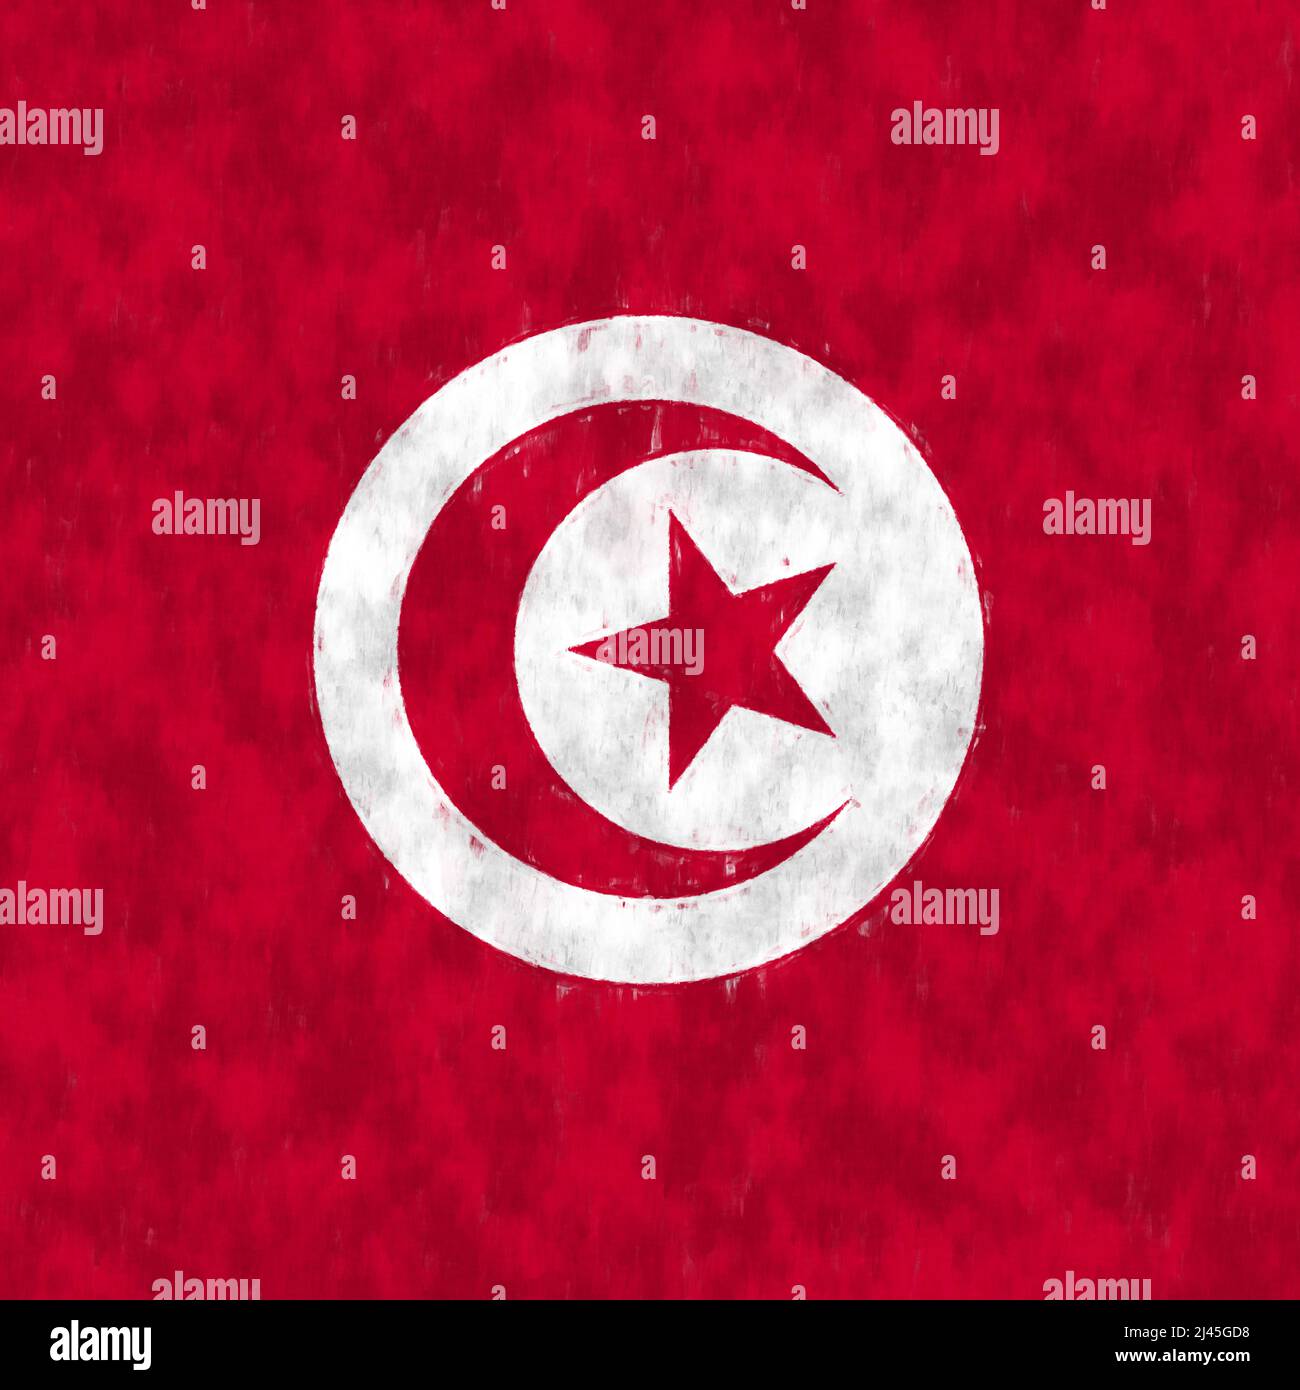 Peinture à l'huile de Tunisie. Toile de dessin d'emblème tunisien. Une image peinte du drapeau d'un pays. Banque D'Images